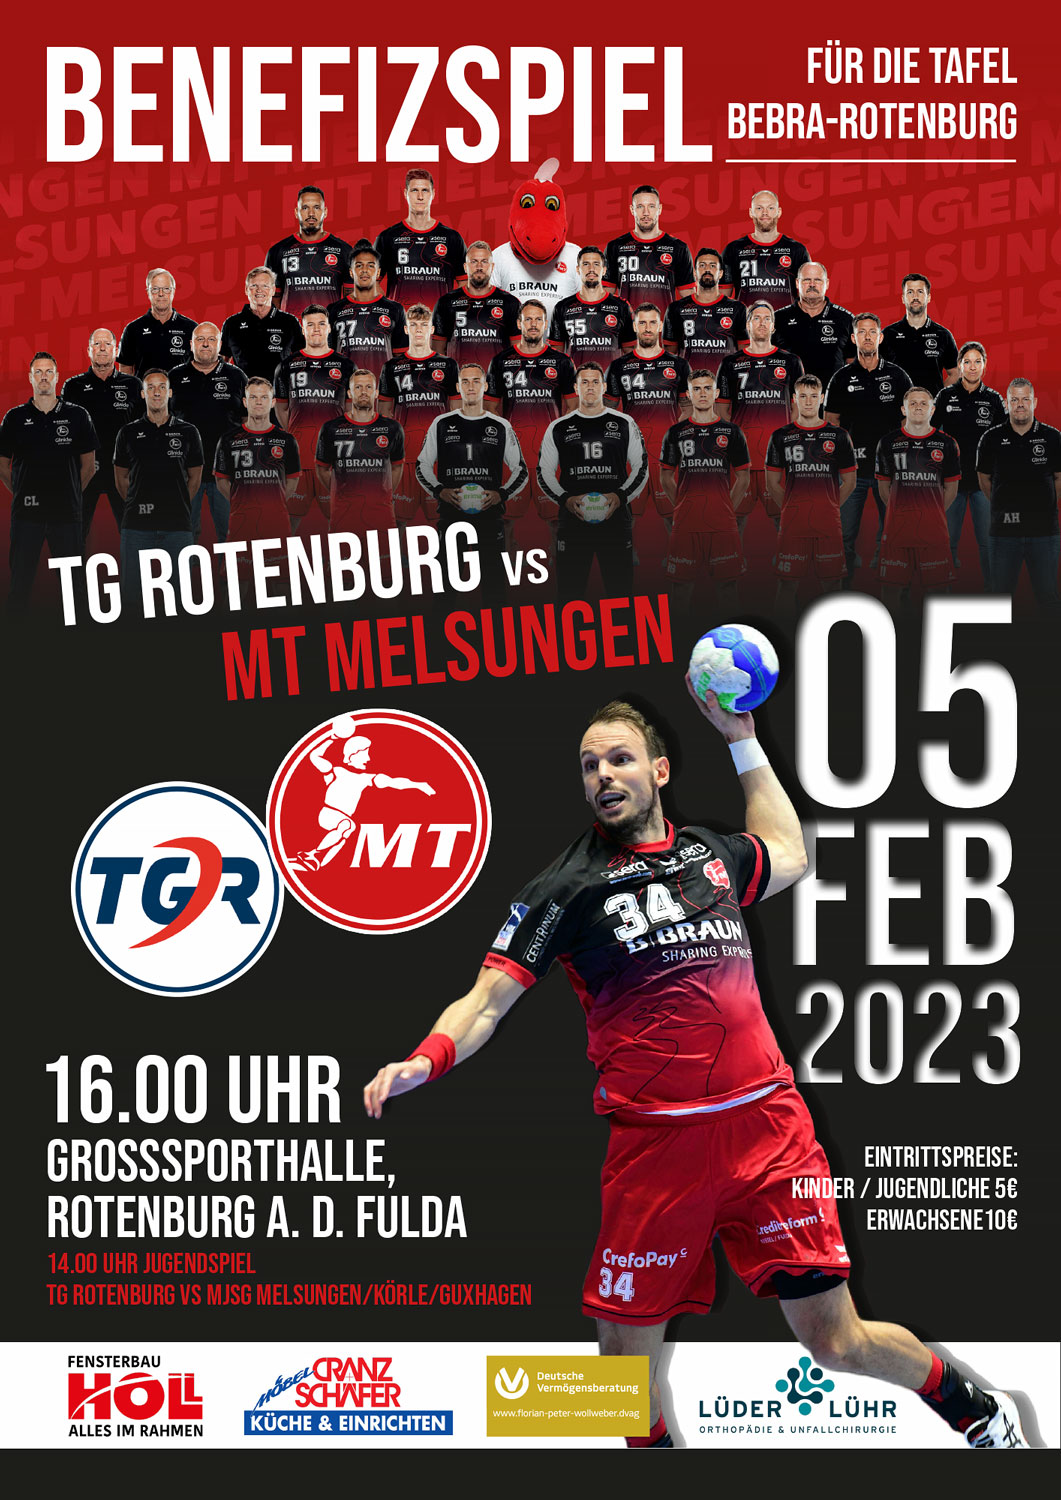 Benefizspiel TG Rotenburg vs MT Melsungen